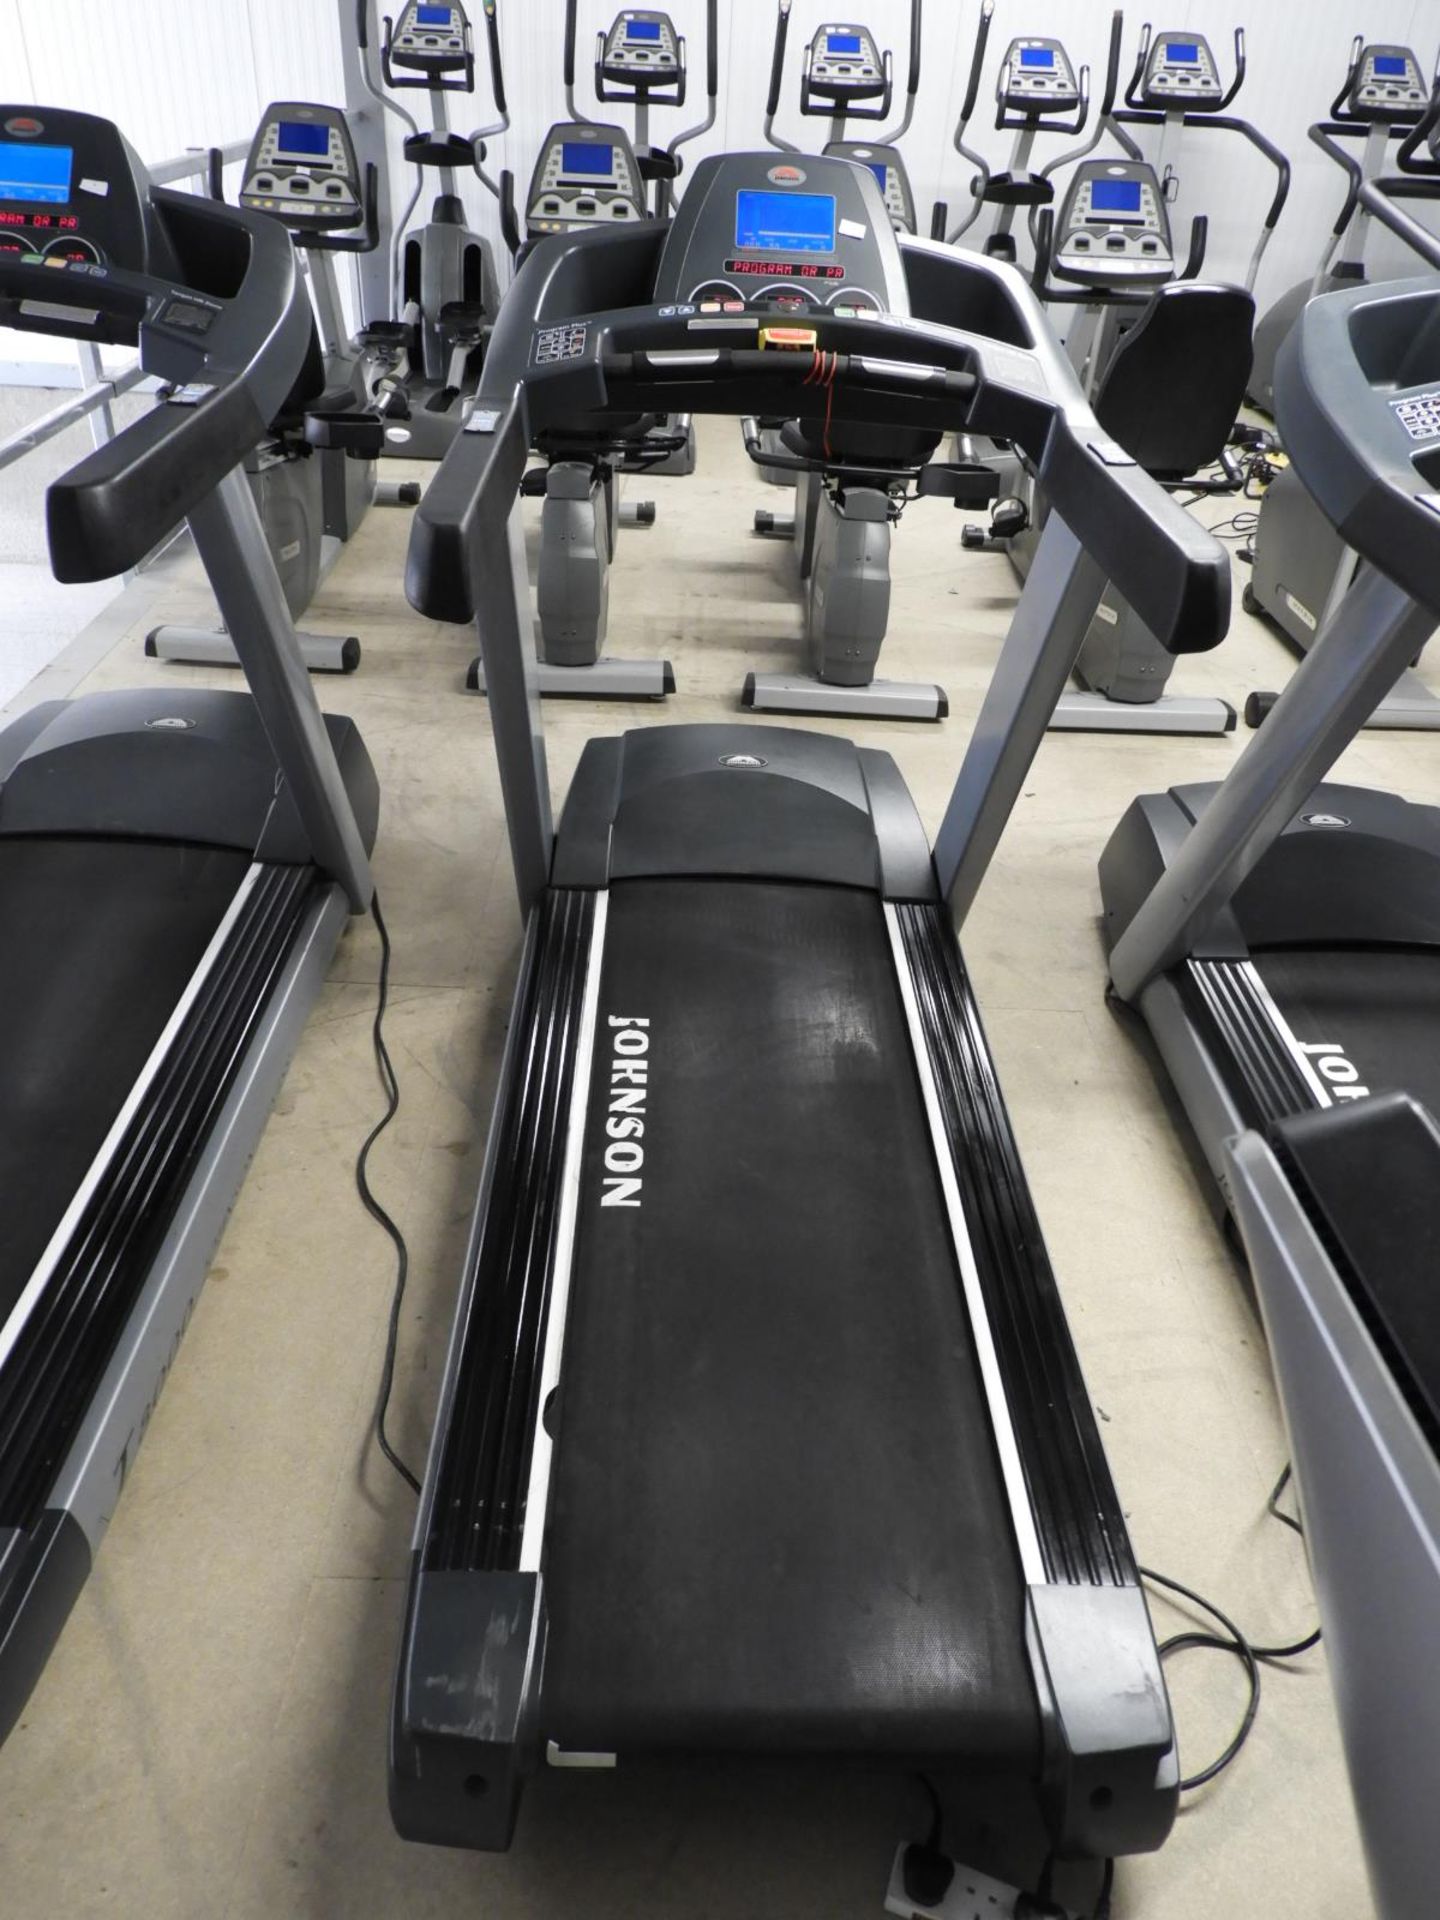 *Johnson T8000 Treadmill